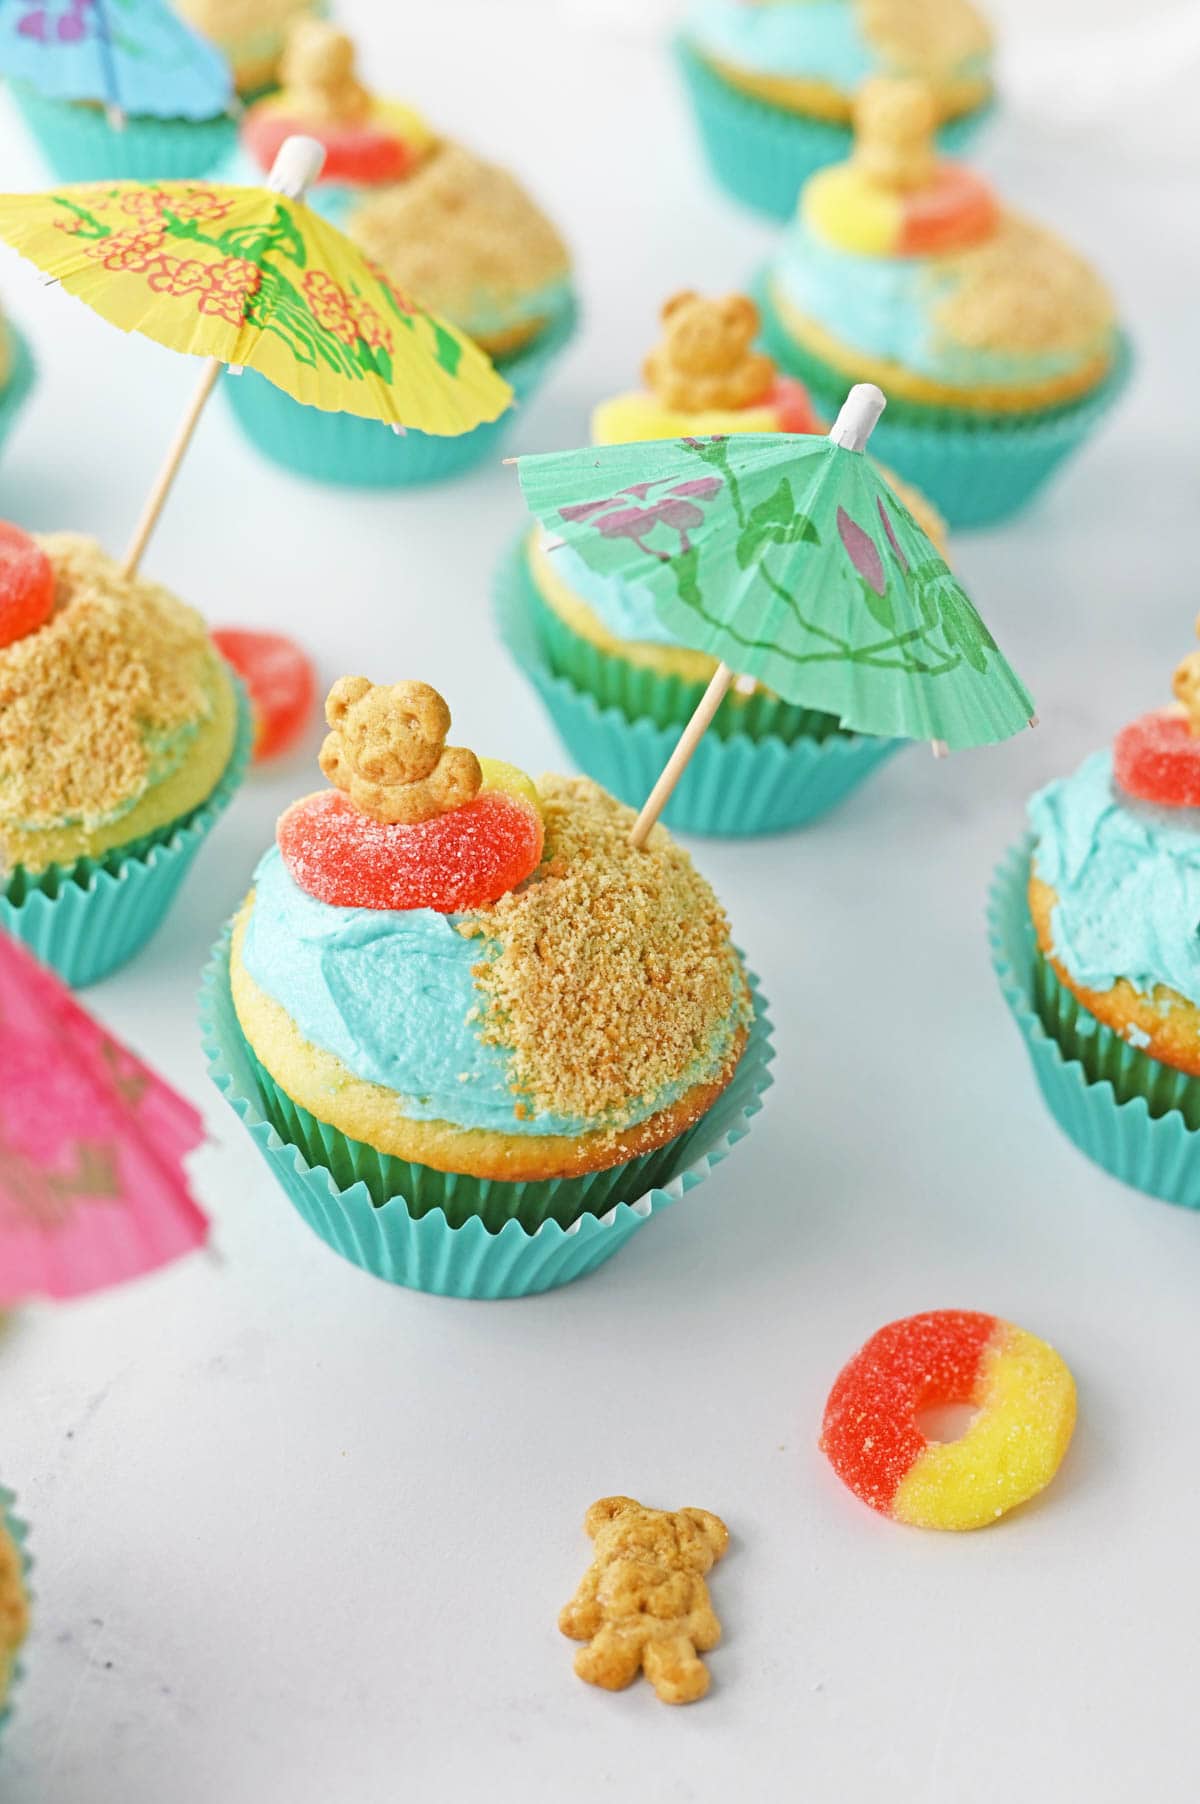 Beach cupcakes with paper umbrellas